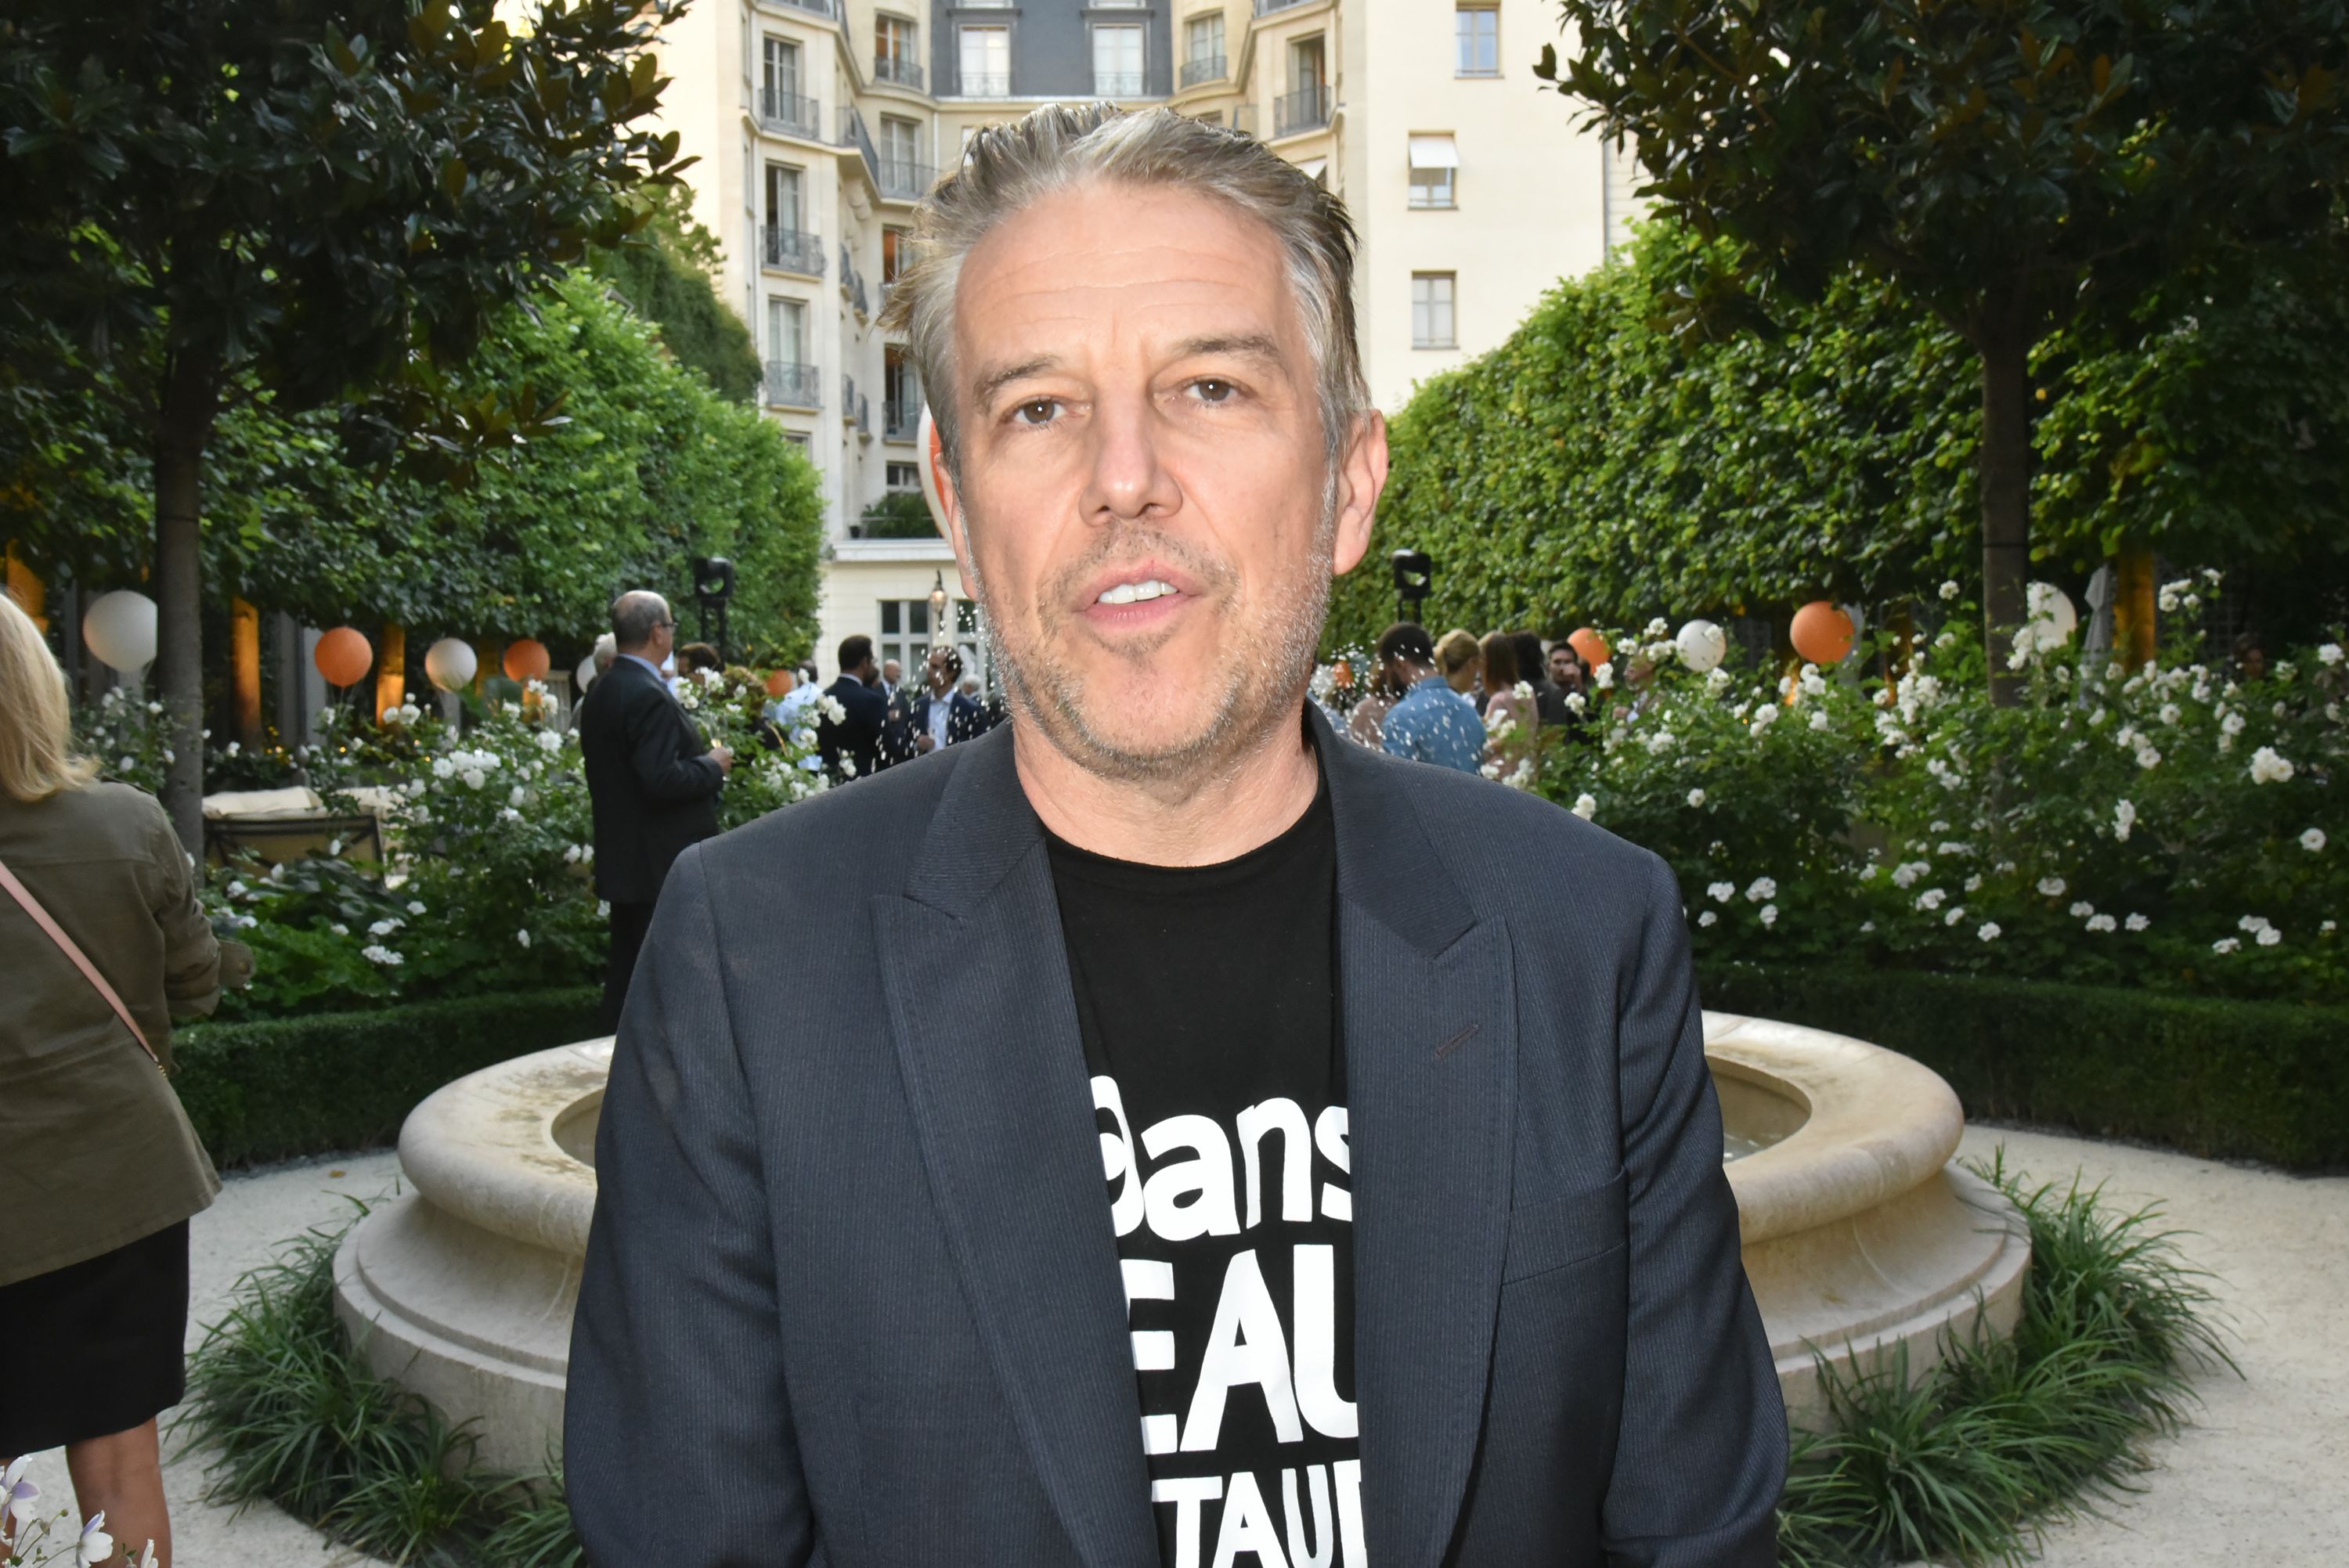  Le présentateur de télévision Philippe Vandel au Ritz le 6 septembre 2018 à Paris, France.  | Photo : Getty Images